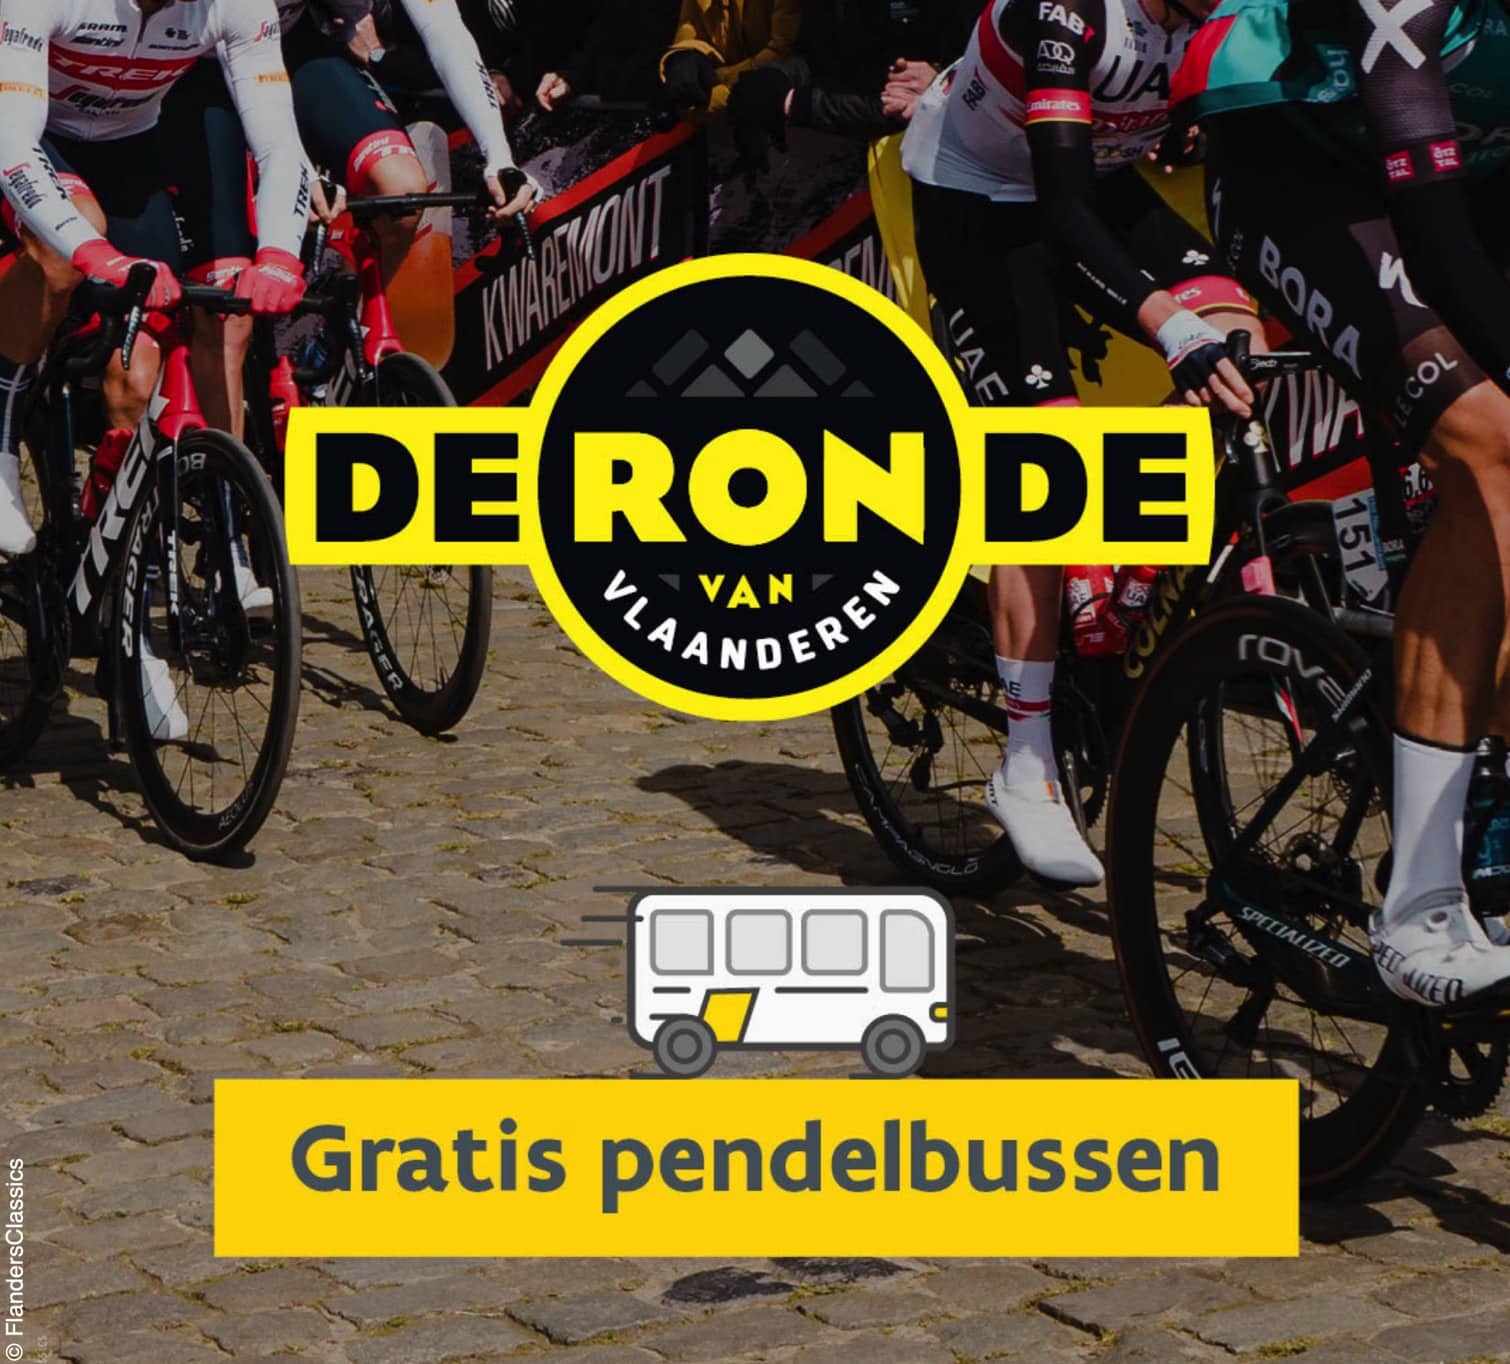 Gratis met de pendelbus naar de Ronde van Vlaanderen